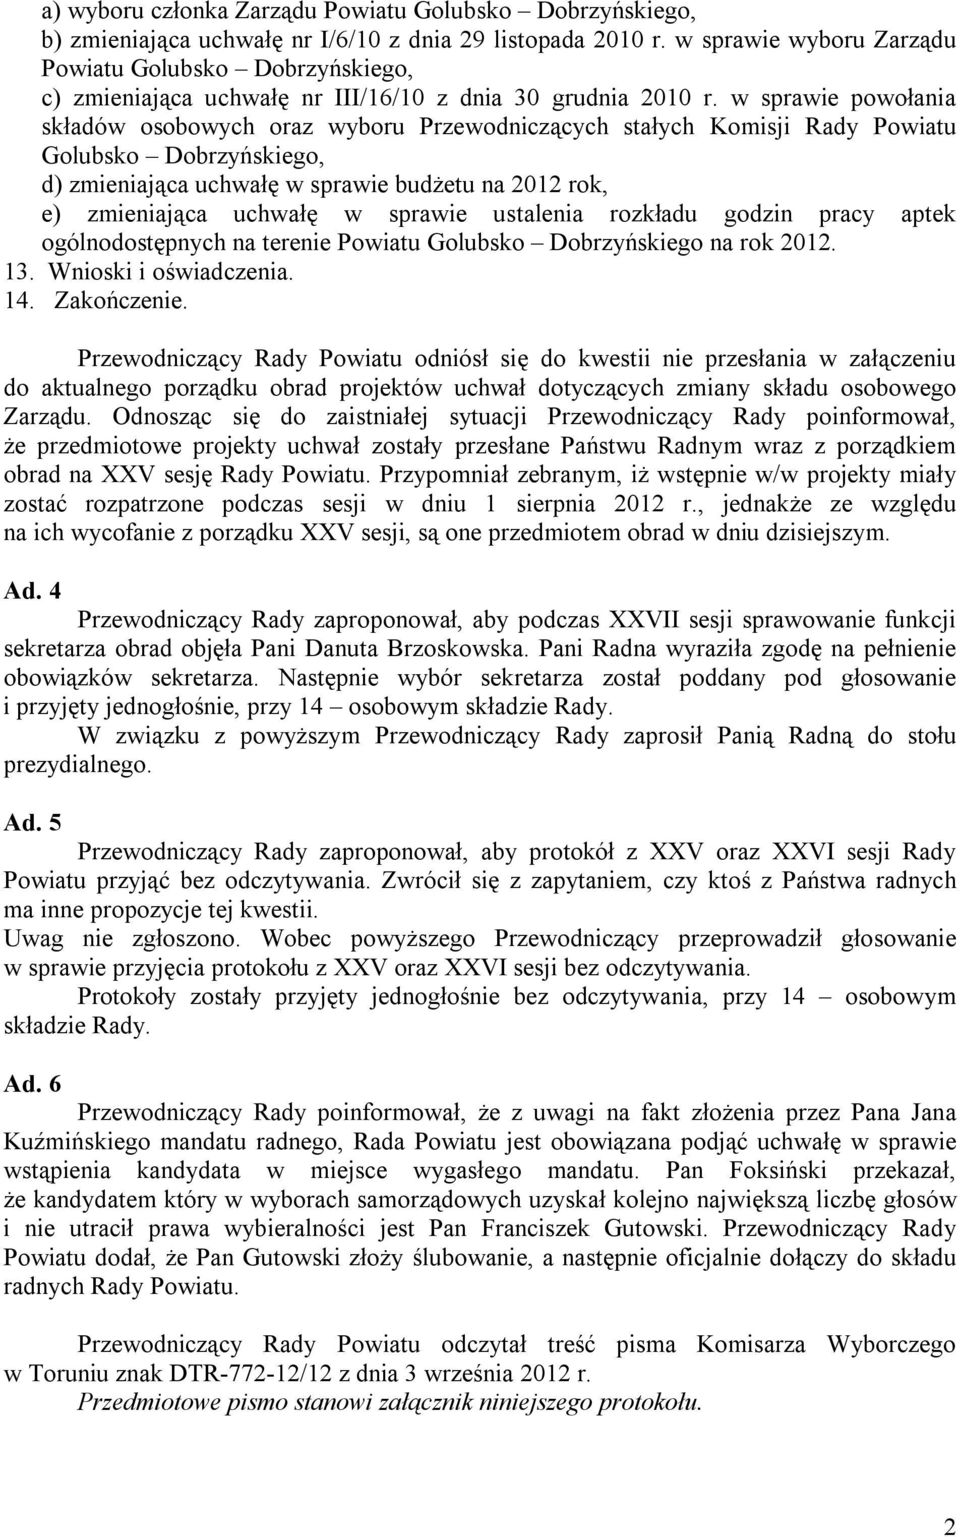 w sprawie powołania składów osobowych oraz wyboru Przewodniczących stałych Komisji Rady Powiatu Golubsko Dobrzyńskiego, d) zmieniająca uchwałę w sprawie budżetu na 2012 rok, e) zmieniająca uchwałę w